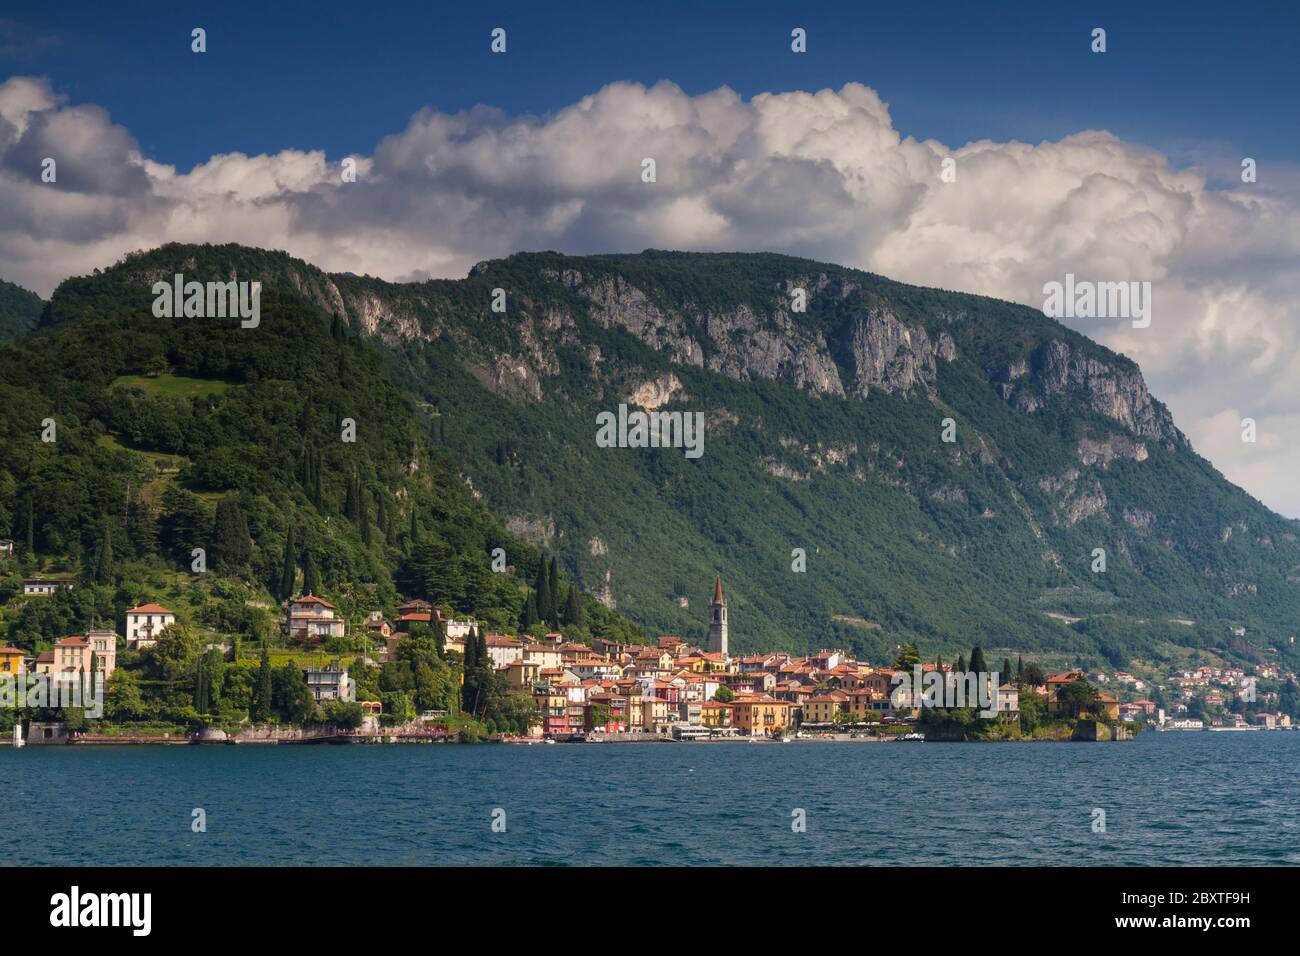 Cityscape of Varenna, Lake Como, Lombardia, Italy Stock Photo